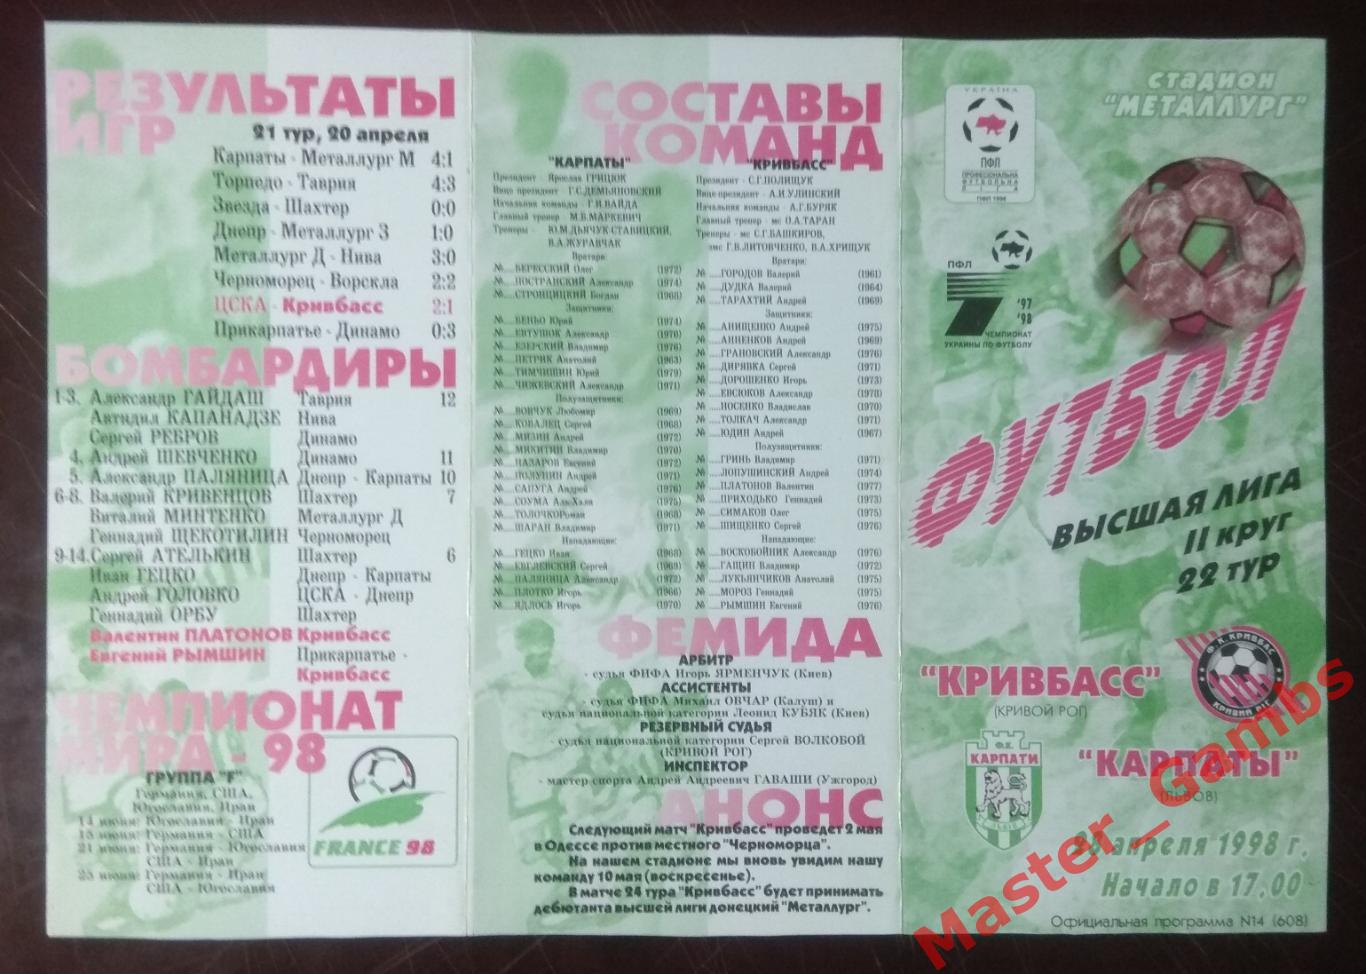 Кривбасс Кривой Рог - Карпаты Львов 1997/1998